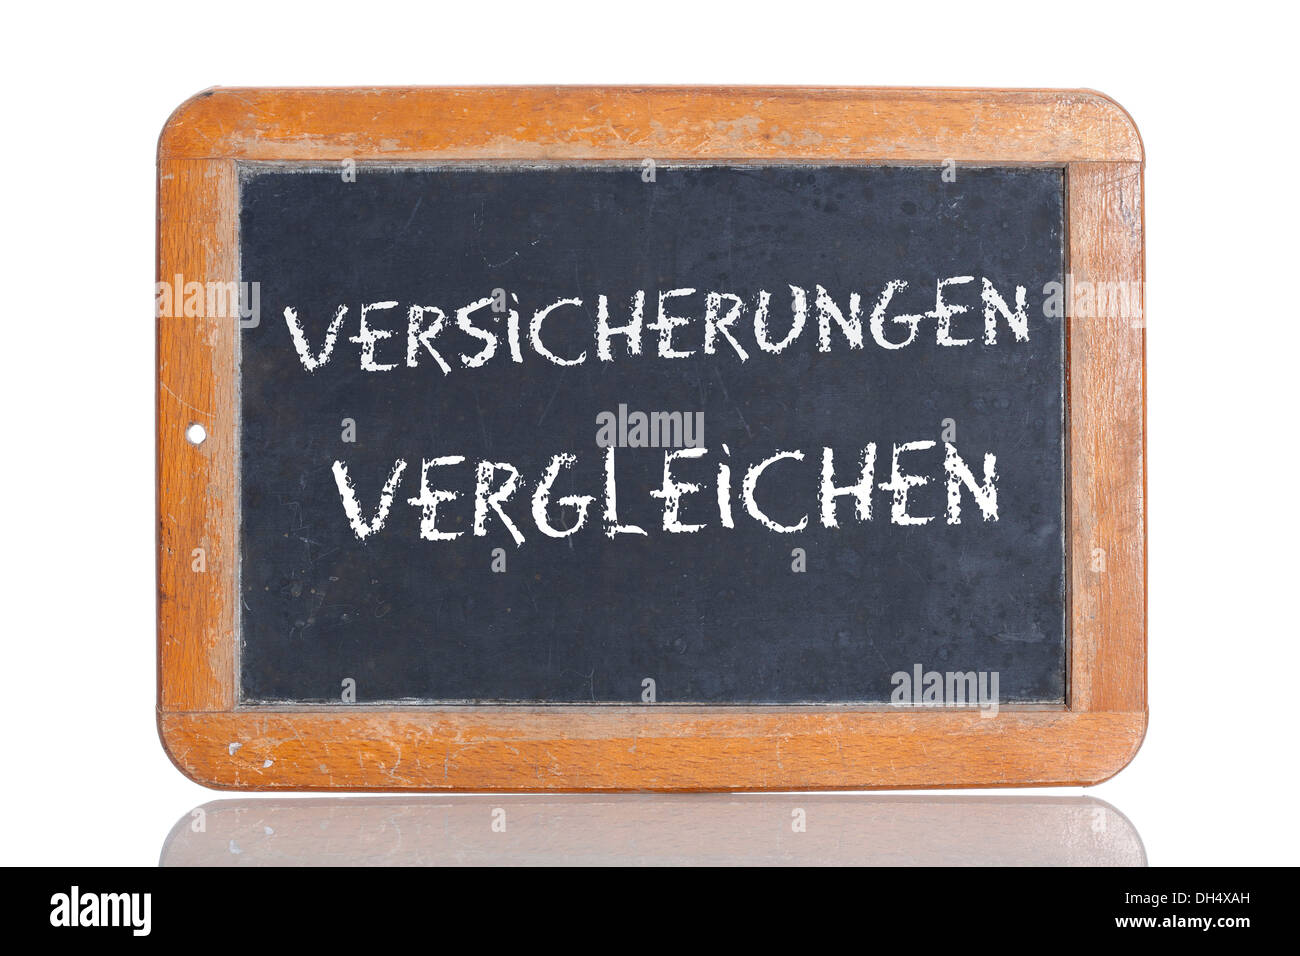 Old chalkboard, lettering 'VERSICHERUNGEN VERGLEICHEN', German for 'COMPARE INSURANCES' Stock Photo